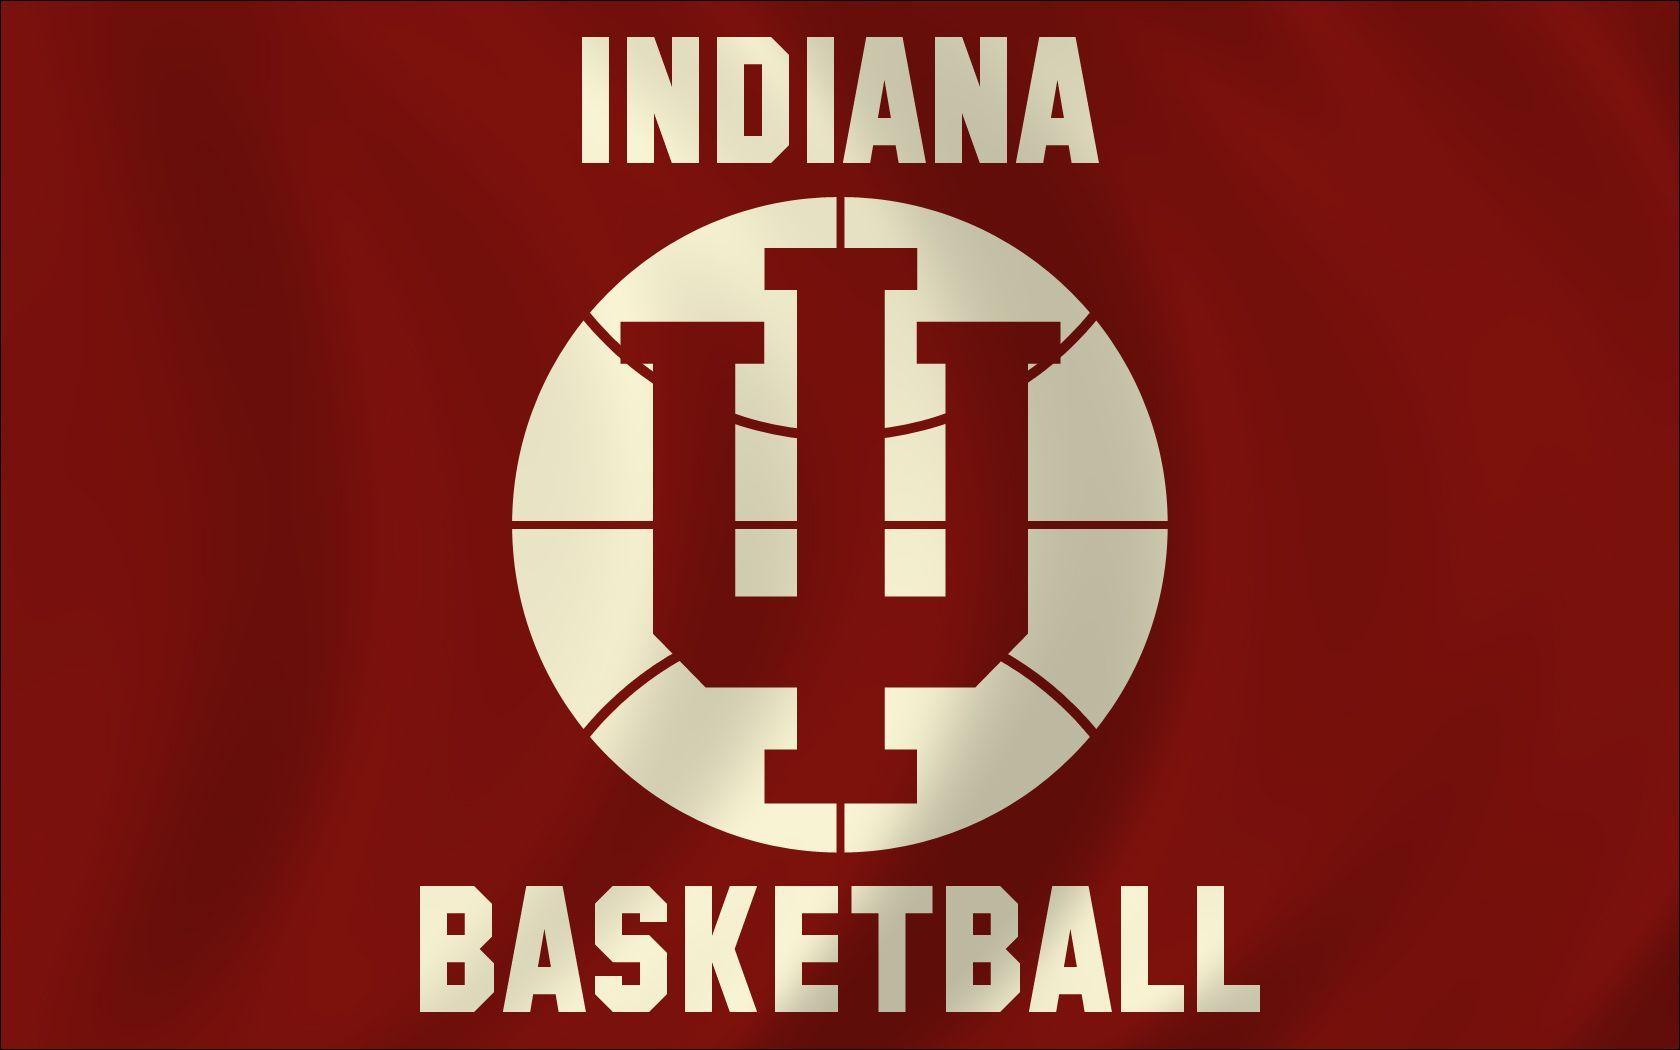 Indiana Hoosiers Basketball Logo - Indiana hoosiers basketball Logos